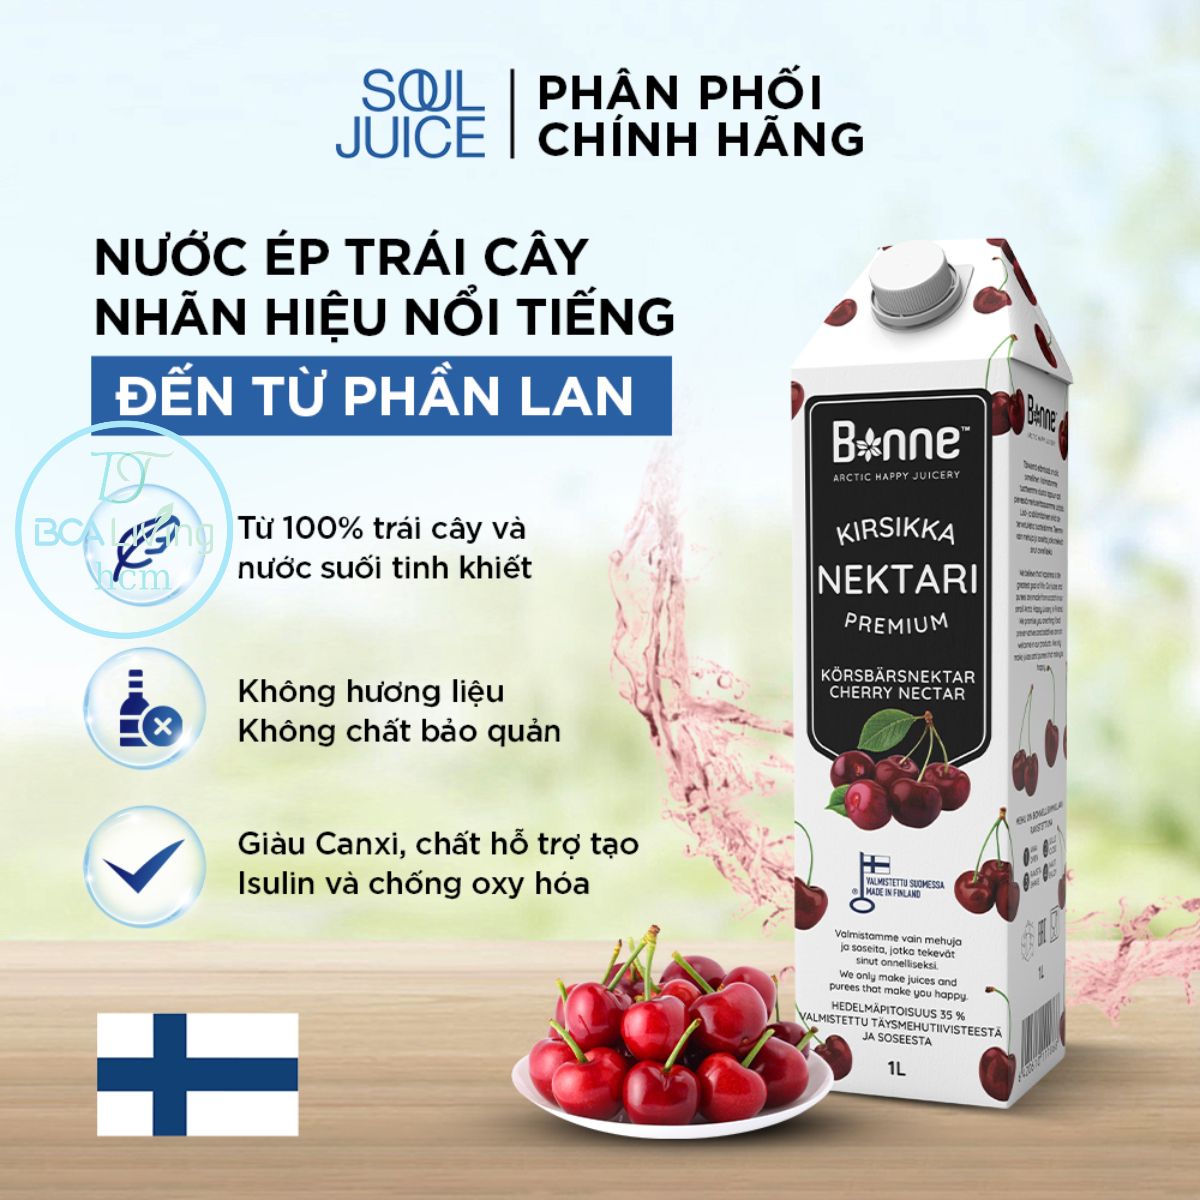 Nước ép Việt quất rừng từ trái cây thật và nước suối tinh khiết bcalivinghcm Bonne Premium Bilberry SOUL JUICEthơm ngon nhiều vị ngon